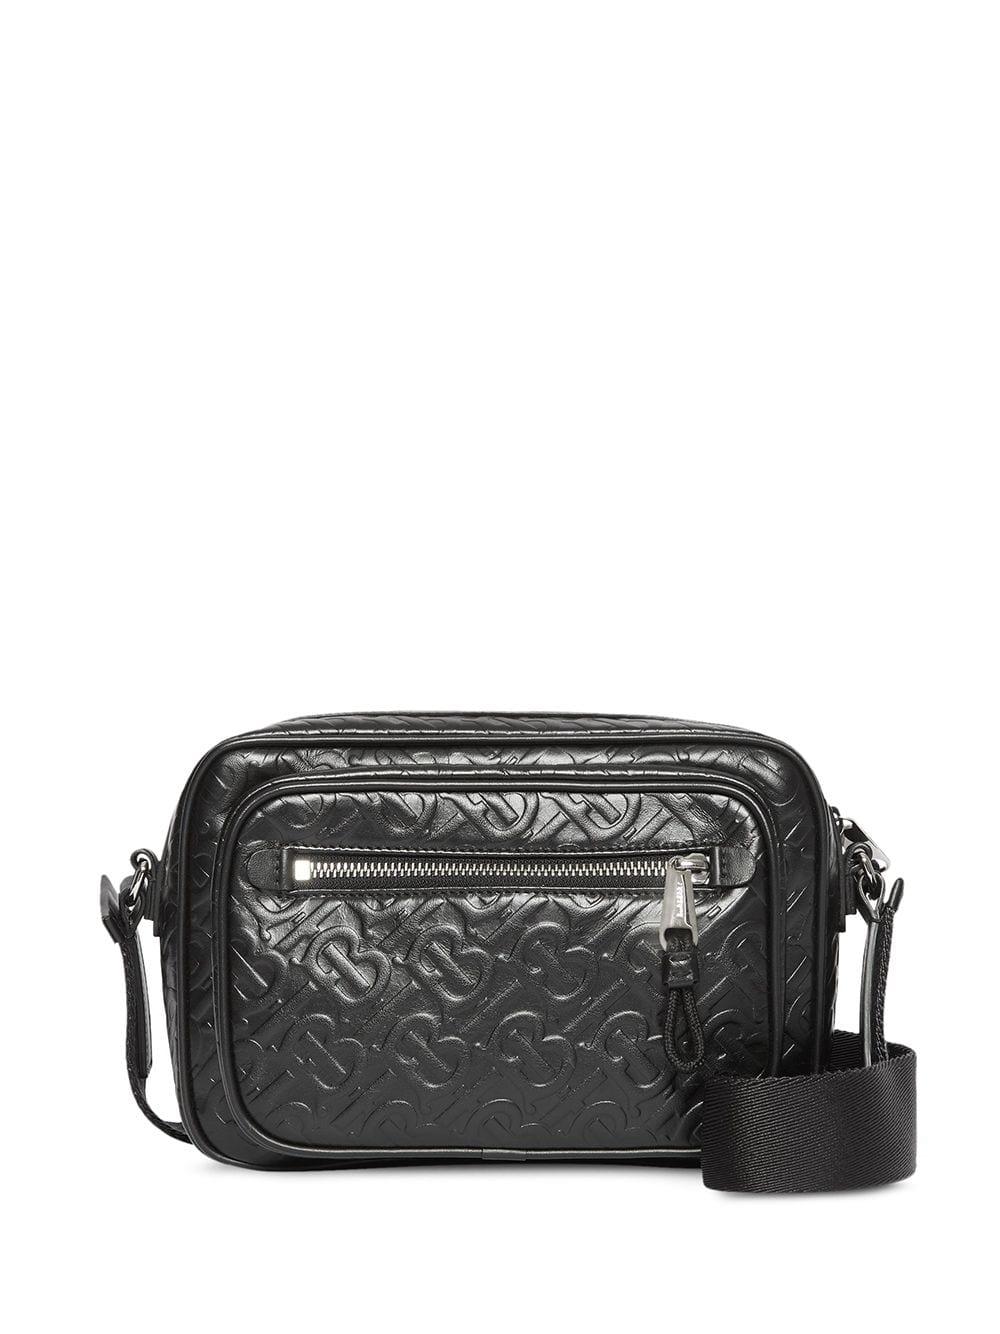 Burberry Monogram Leather Crossbody Bag in Black for Men | Lyst